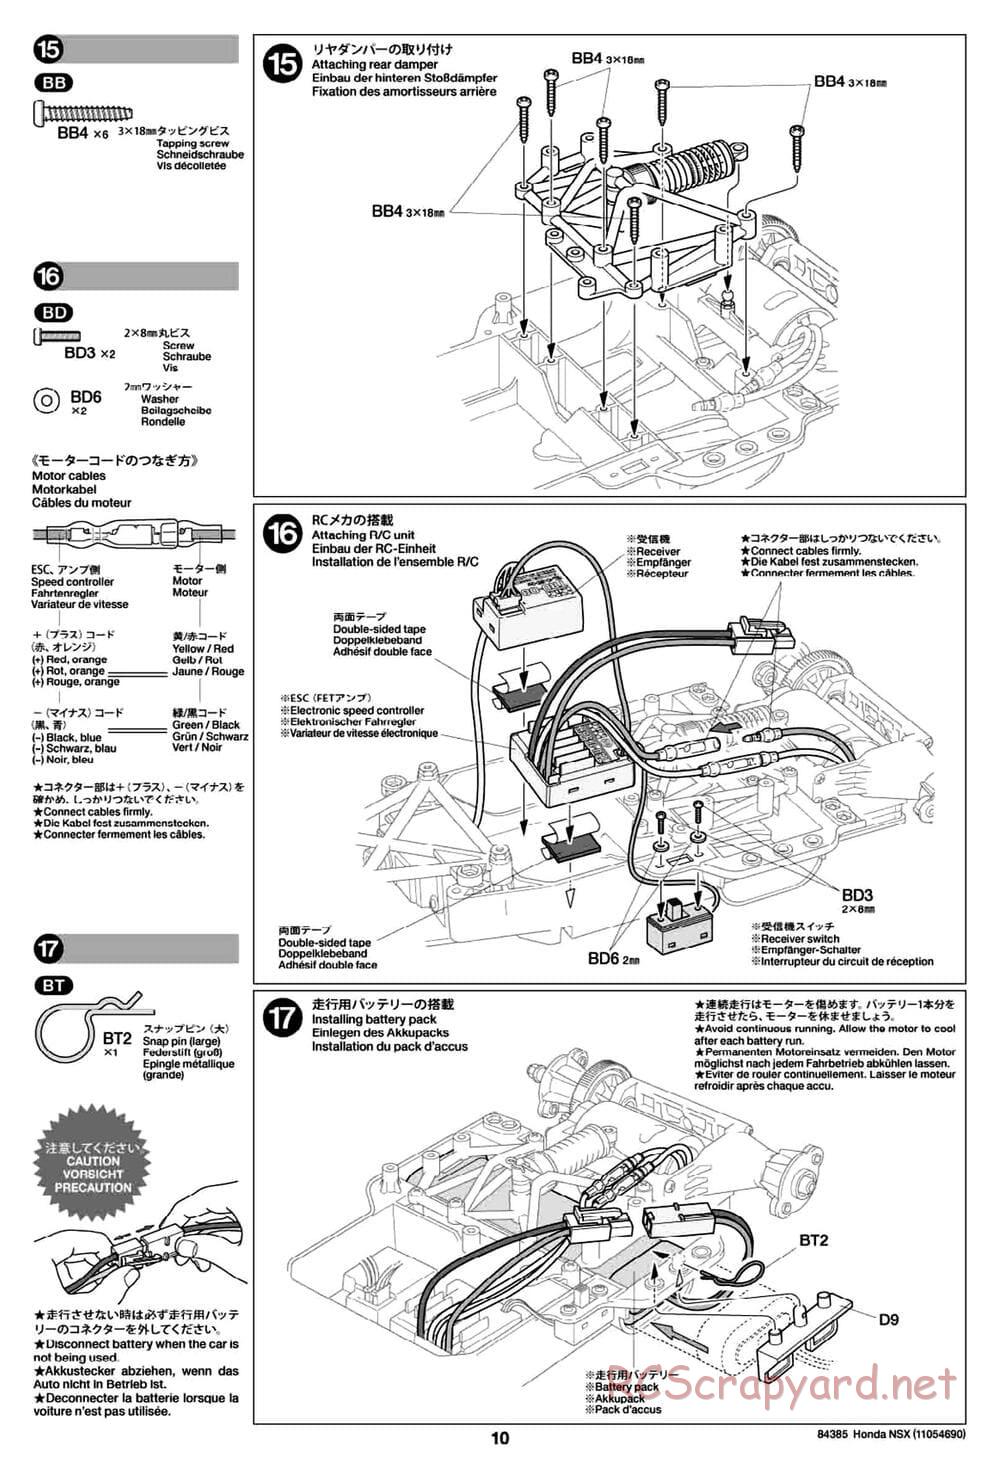 Tamiya - Honda NSX - Group-C Chassis - Manual - Page 10